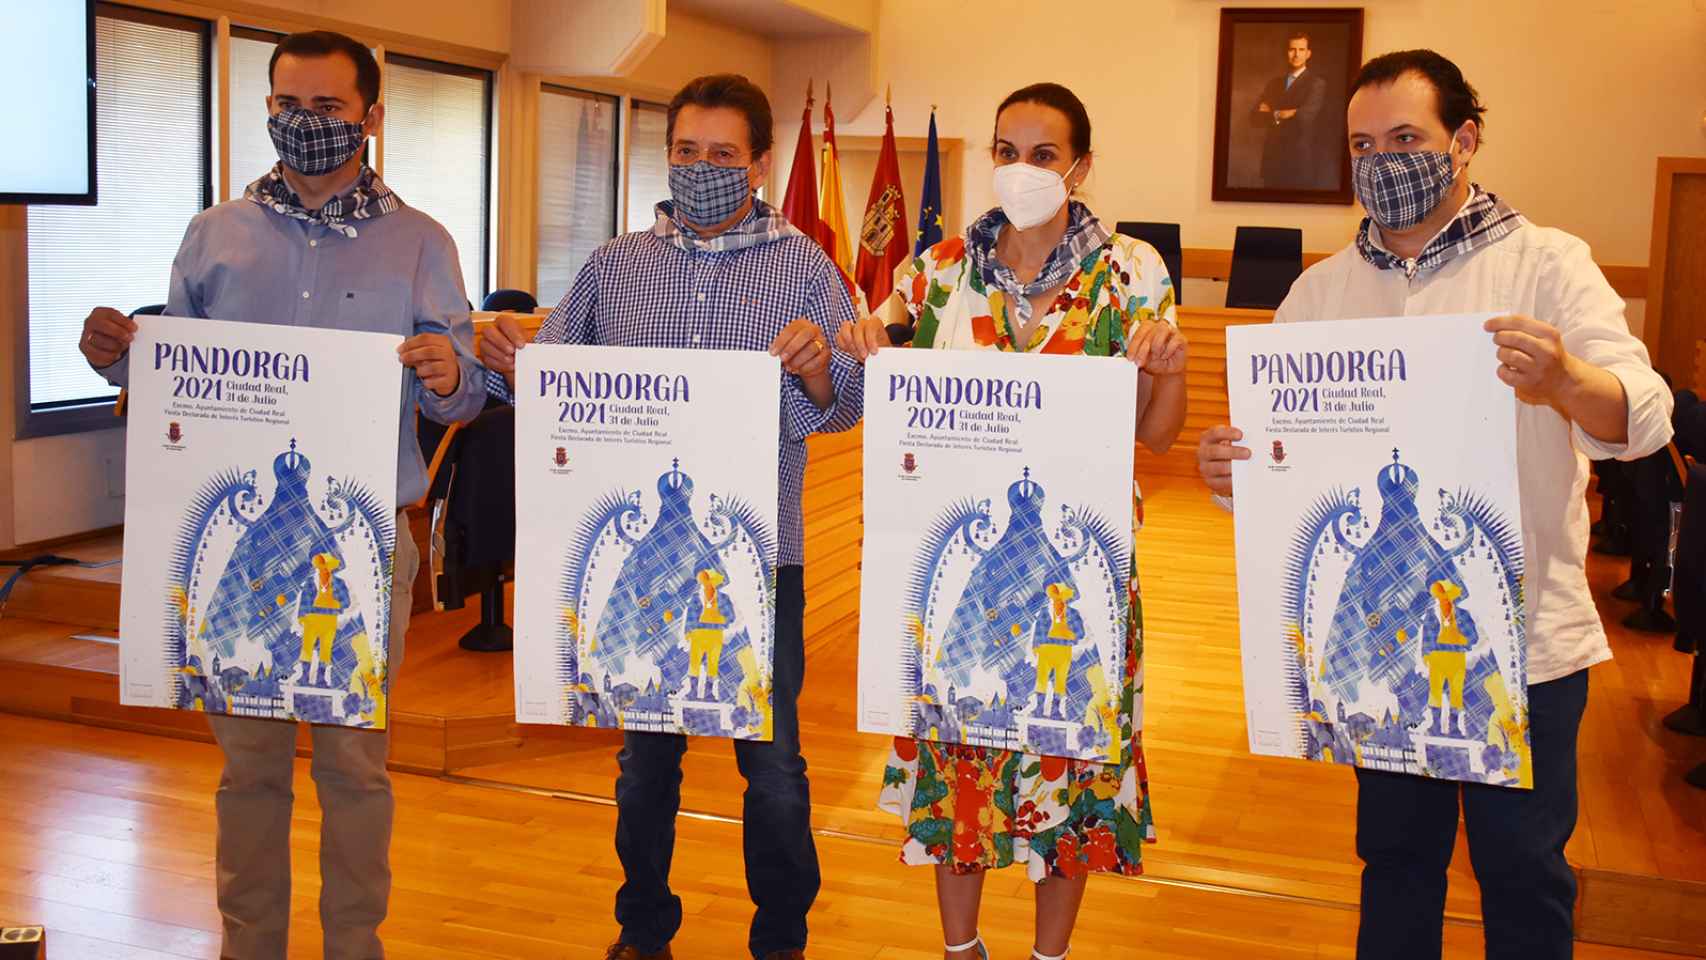 El cartel de la Pandorga 2021 es obra del murciano Rubén Lucas García